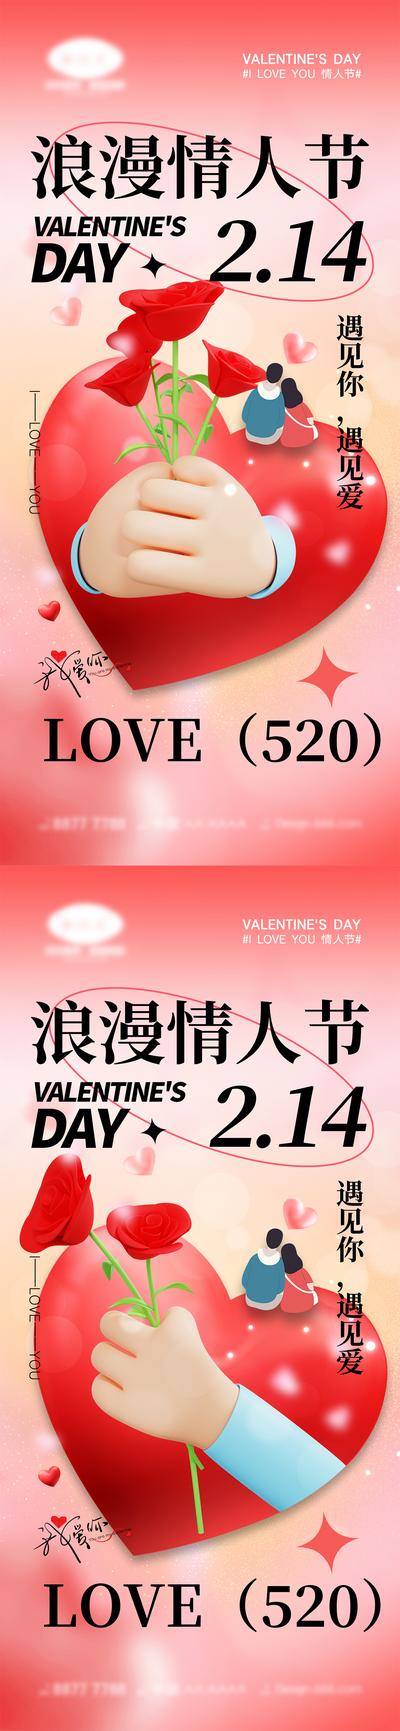 南门网 海报 活动 520 情人节 告白日 love 爱情 喜鹊 牛郎织女 七夕 爱心 气球 214